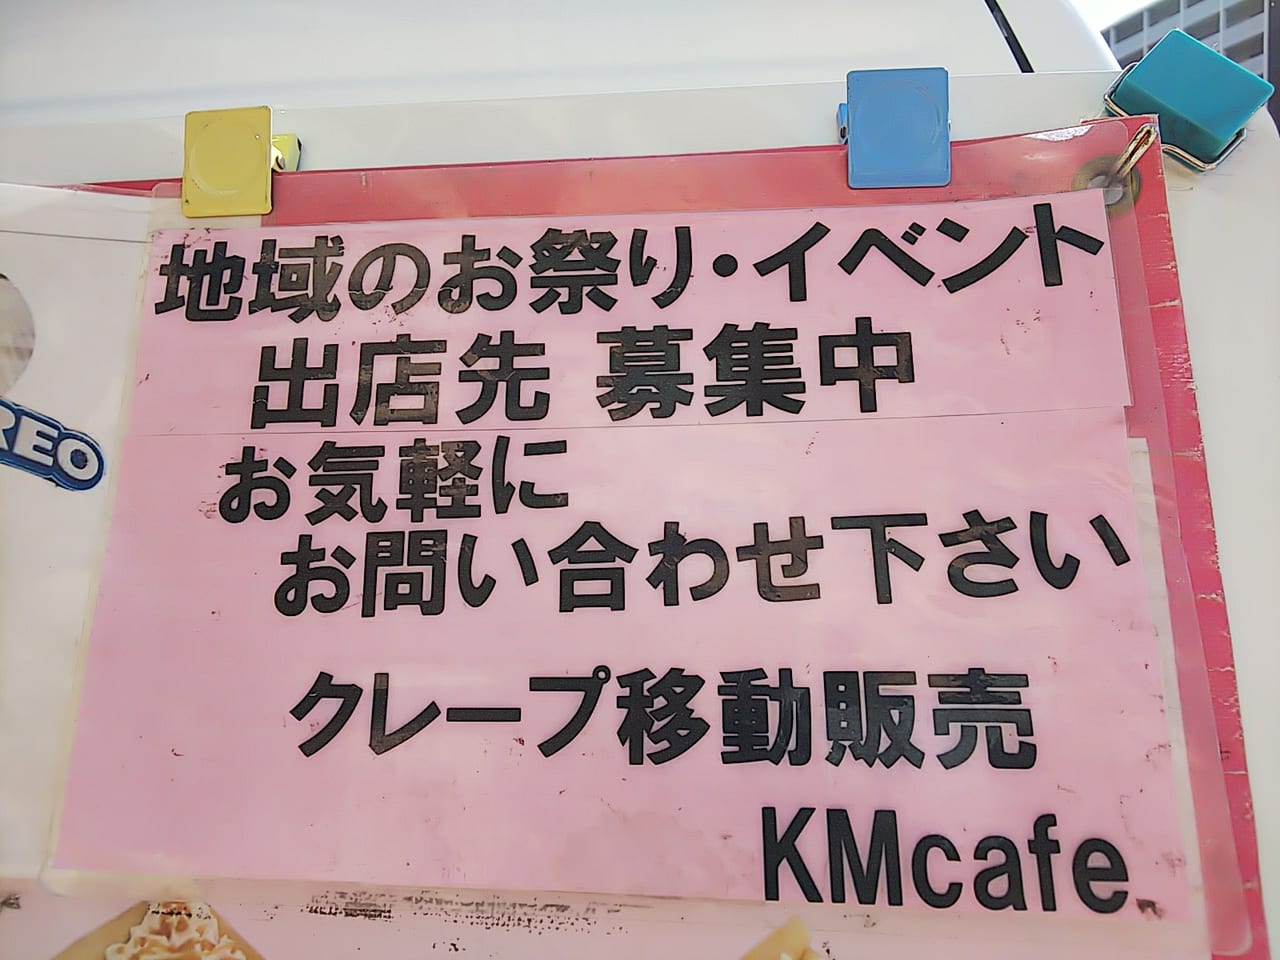 MKcafe(福山クレープ屋)